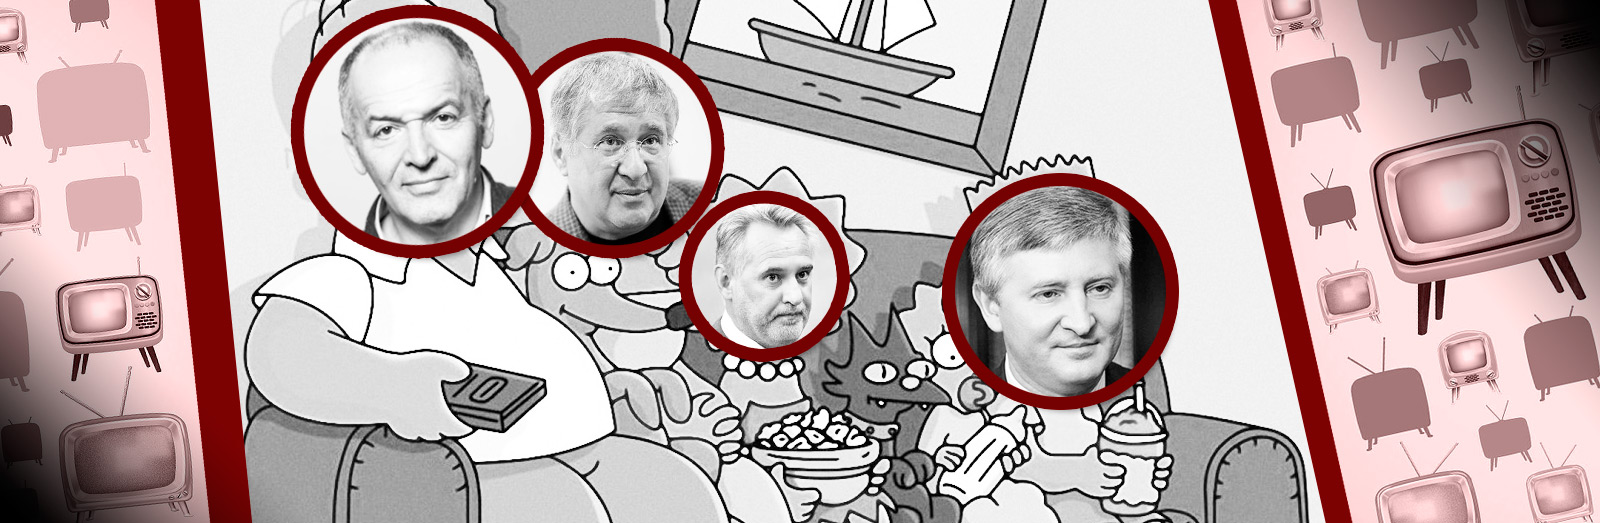 Телевізор і вибори. Кого підтримують Ахметов, Пінчук, Коломойський і Фірташ